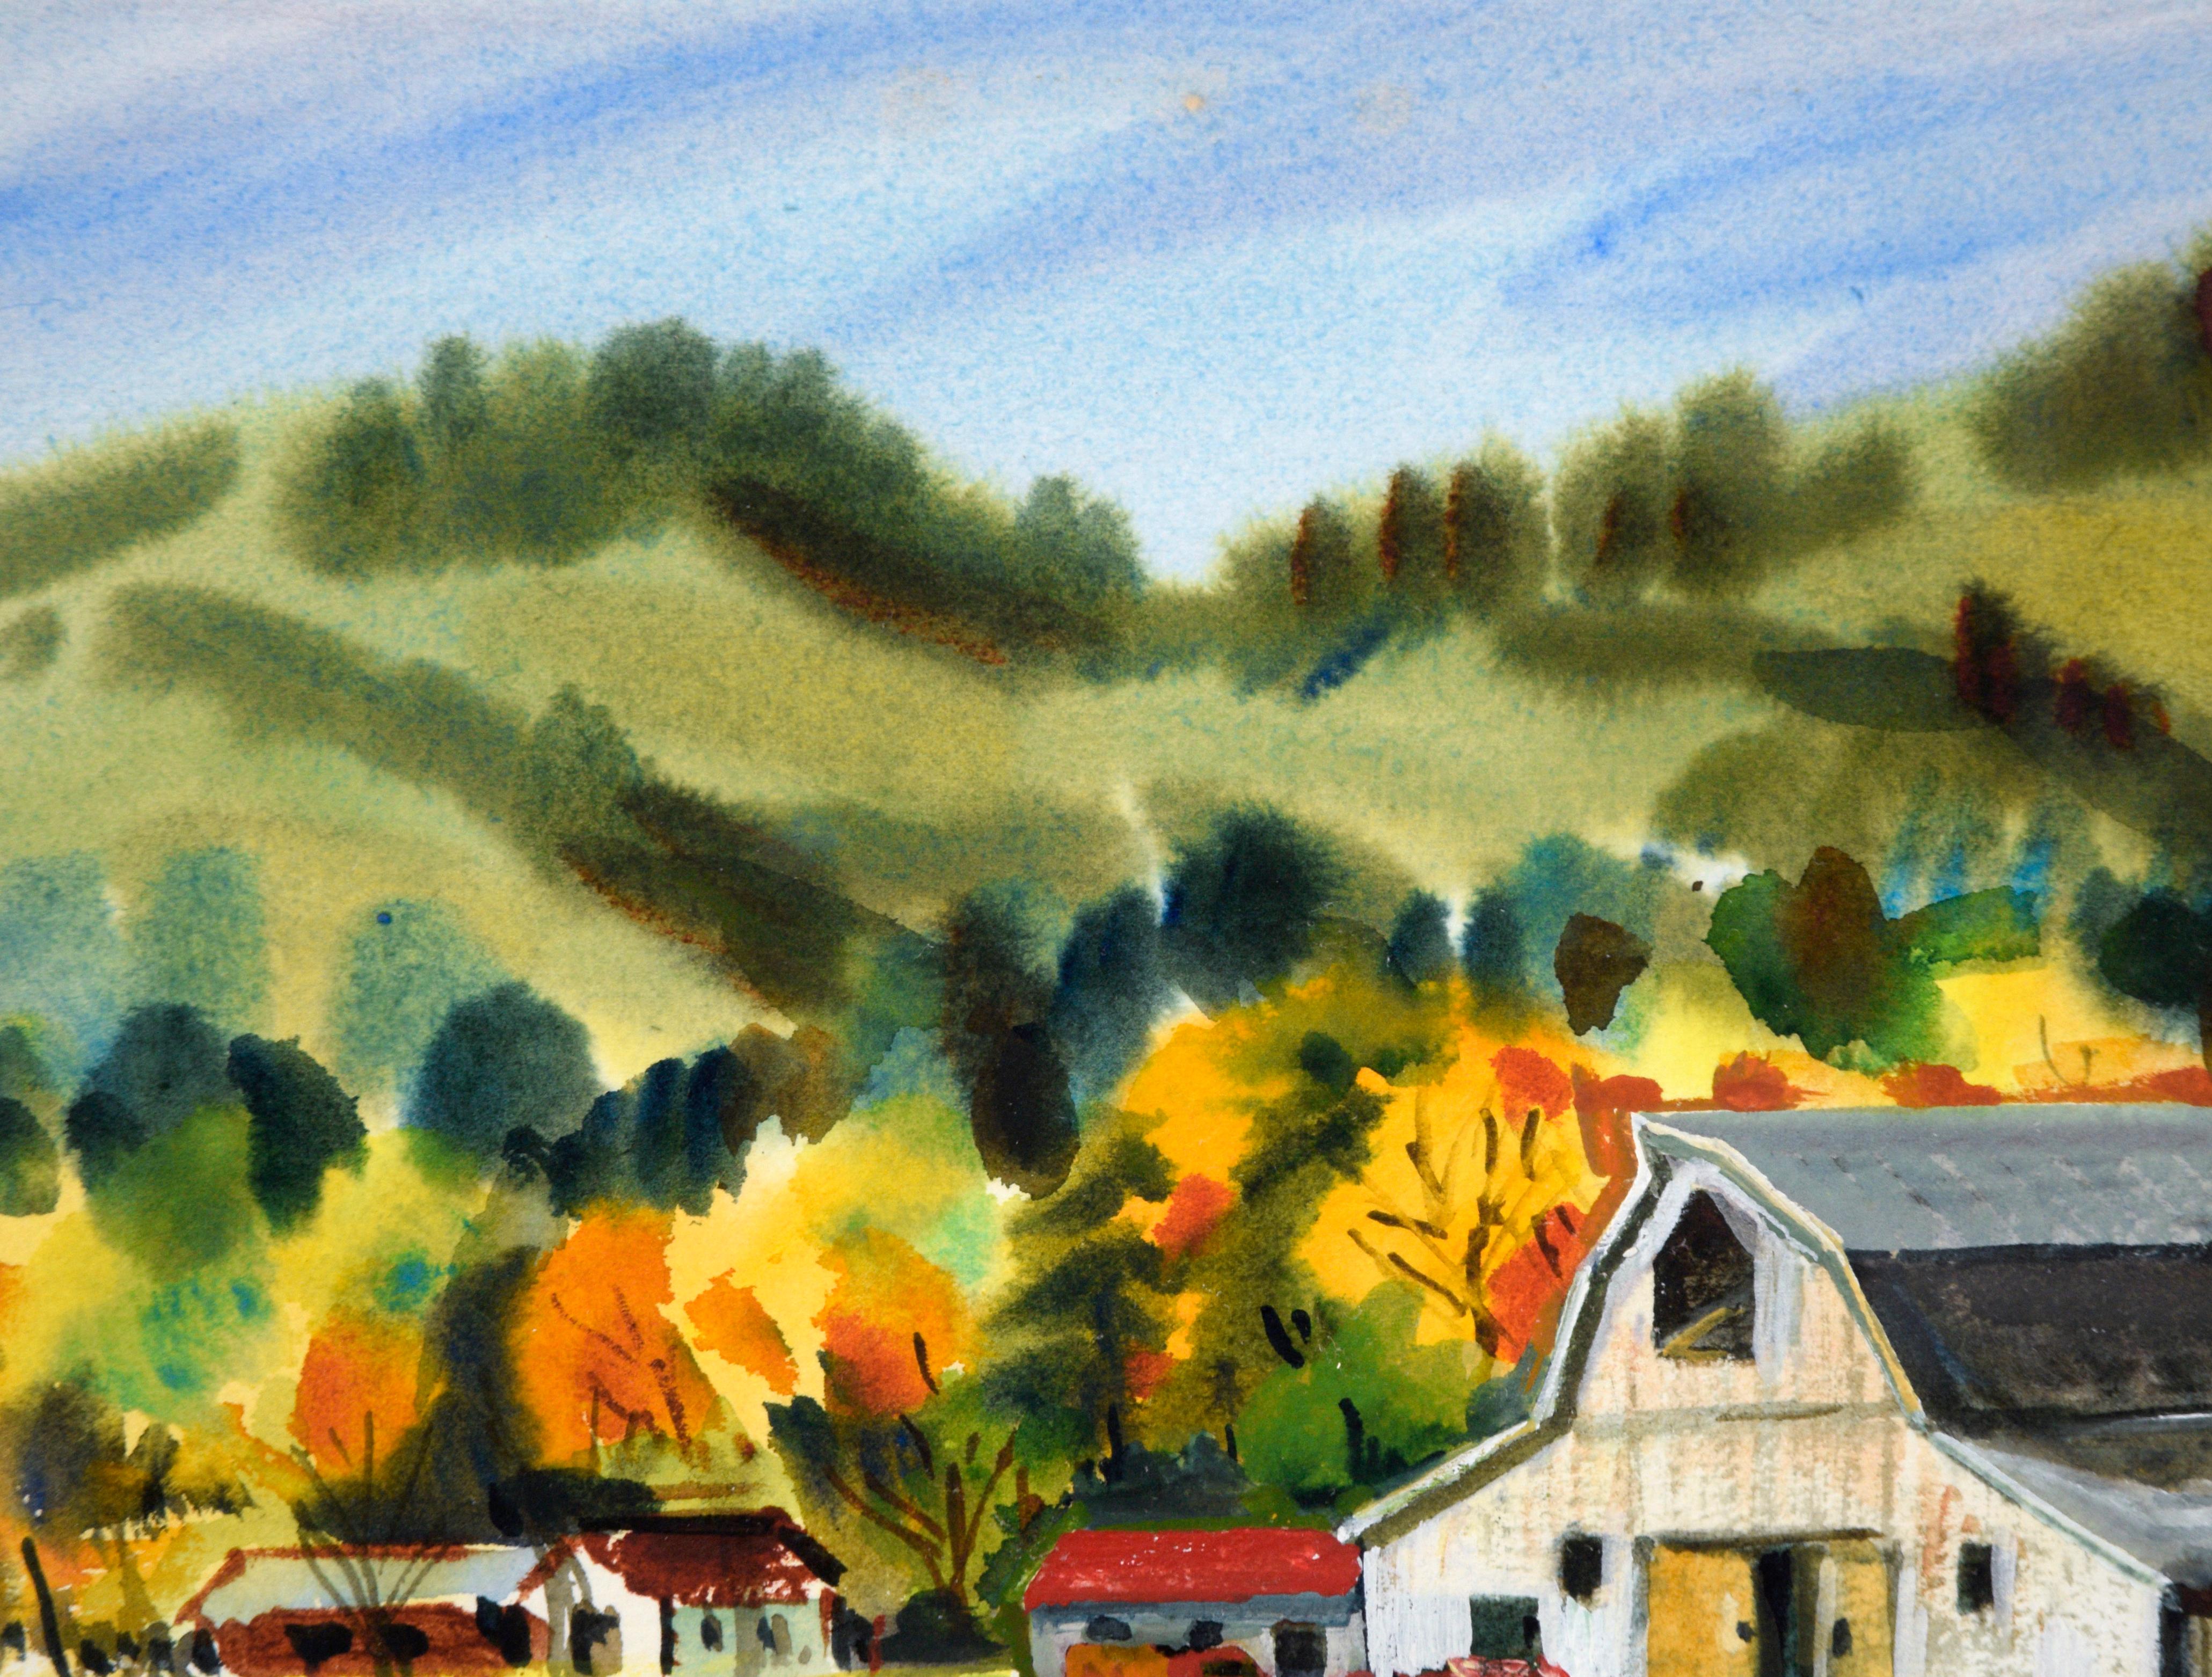 Barn Country Barn d'automne à l'aquarelle - Paysage sur papier - Art de Lewis Suzuki